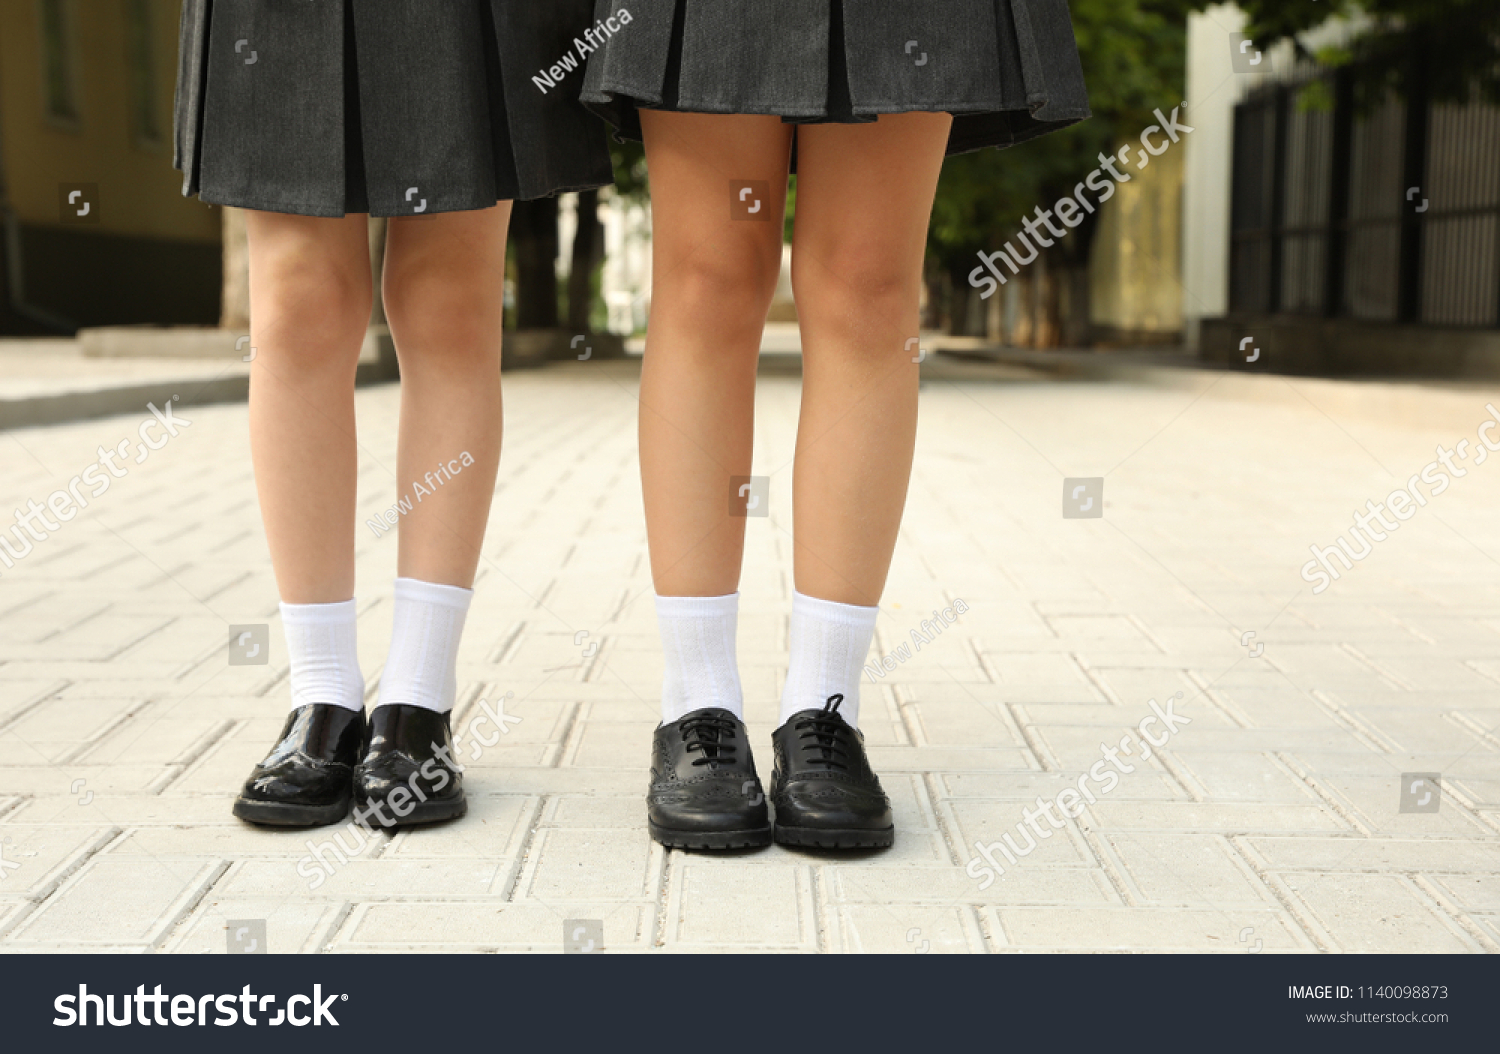 37,059 Girl school skirt Images, Stock Photos & Vectors | Shutterstock